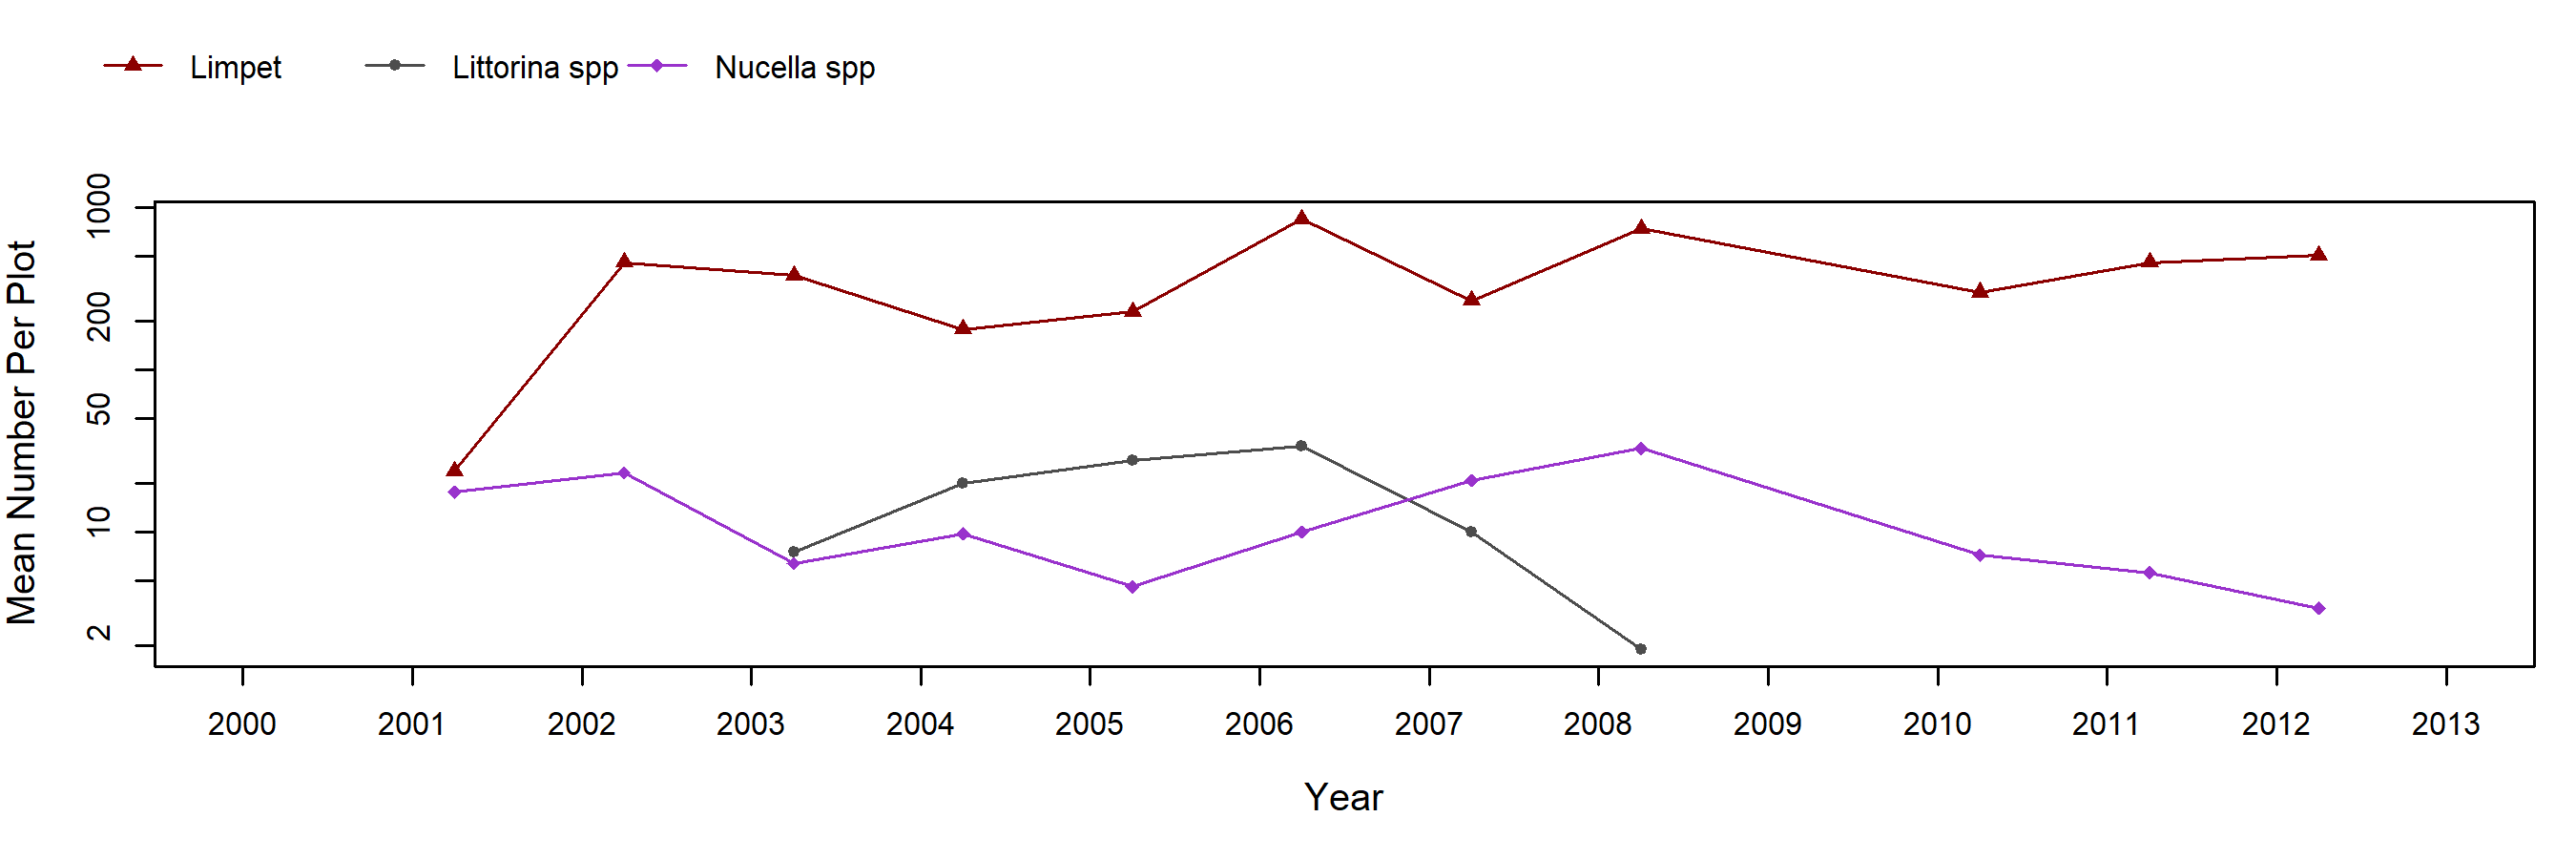 Cape Arago Mytilus trend plot